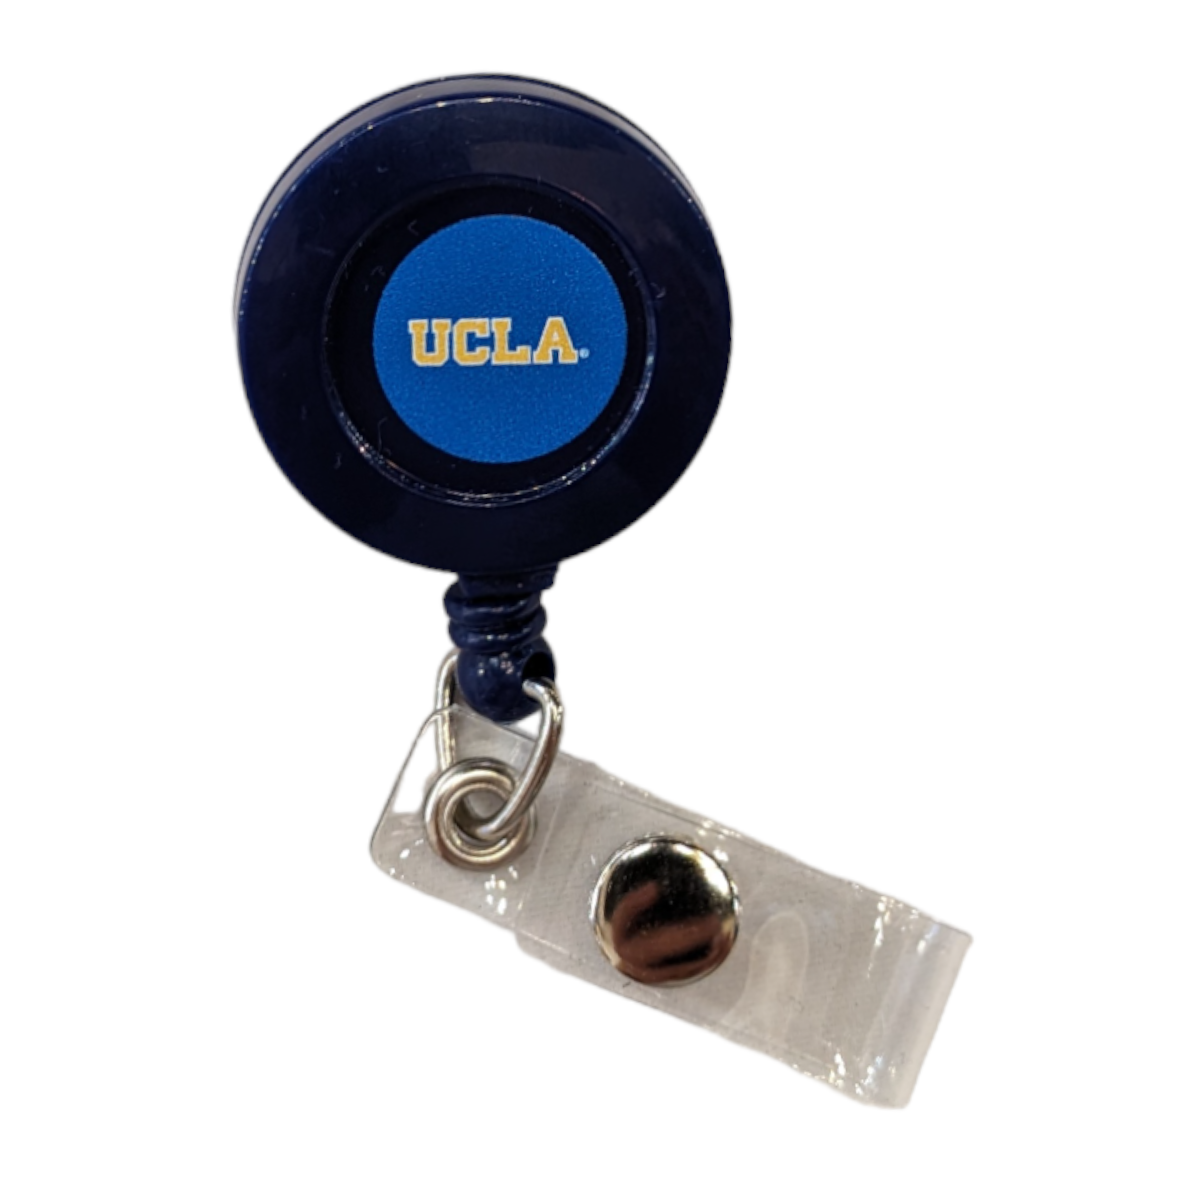 Mcm Brands UCLA Retractable Badge Holder Blue